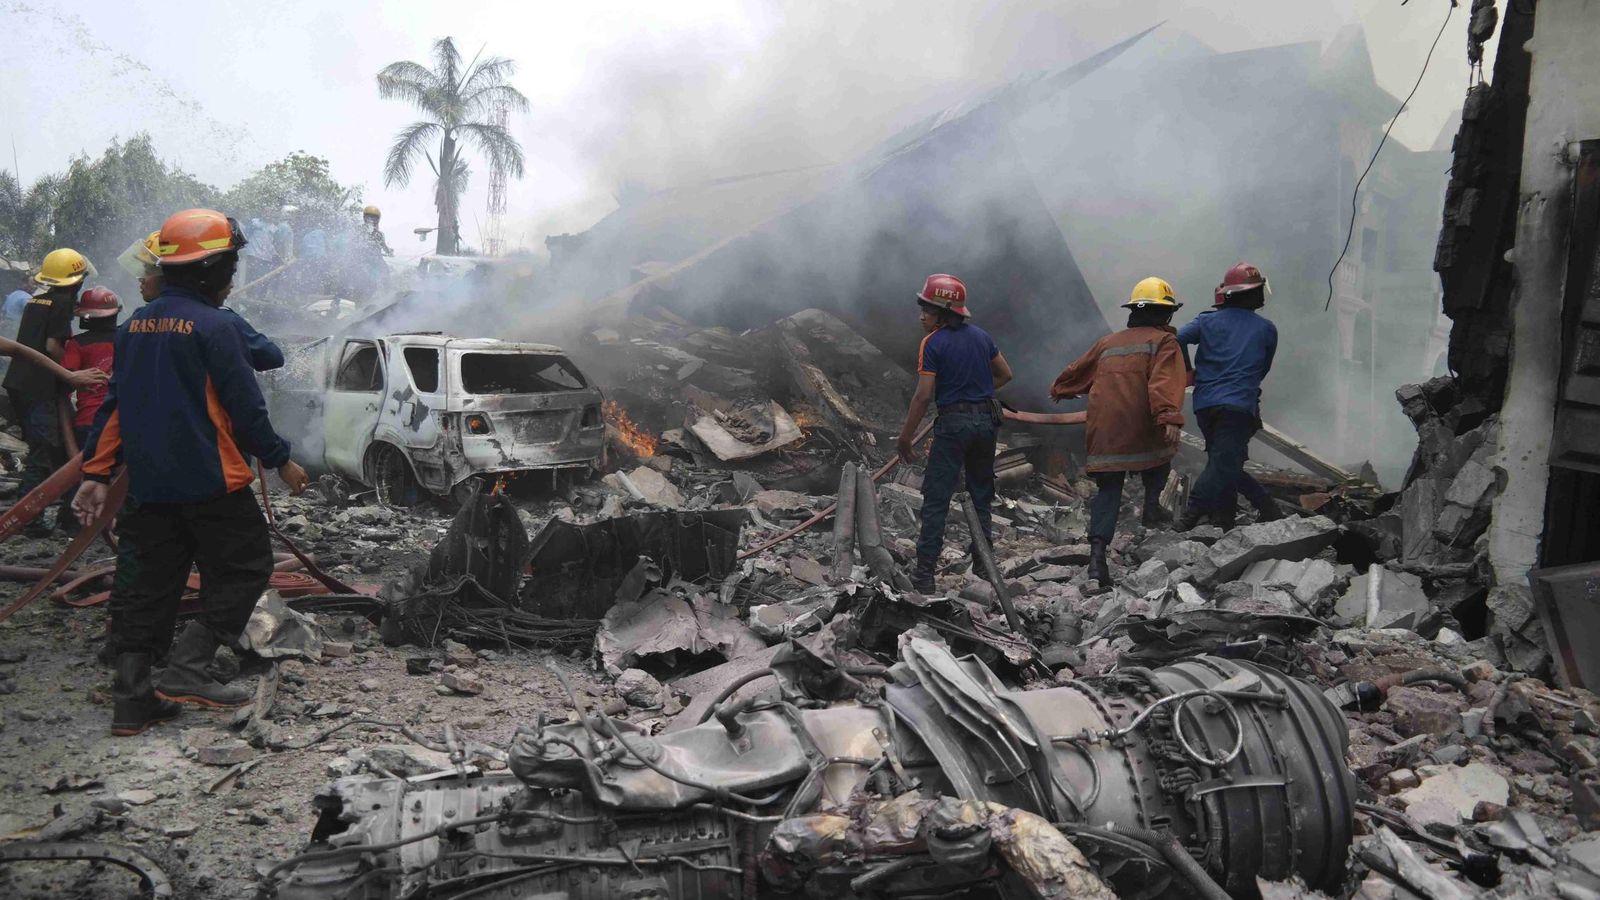 Foto: Los bomberos extinguen el fuego después de que el avión se estrellara en la zona (Reuters)